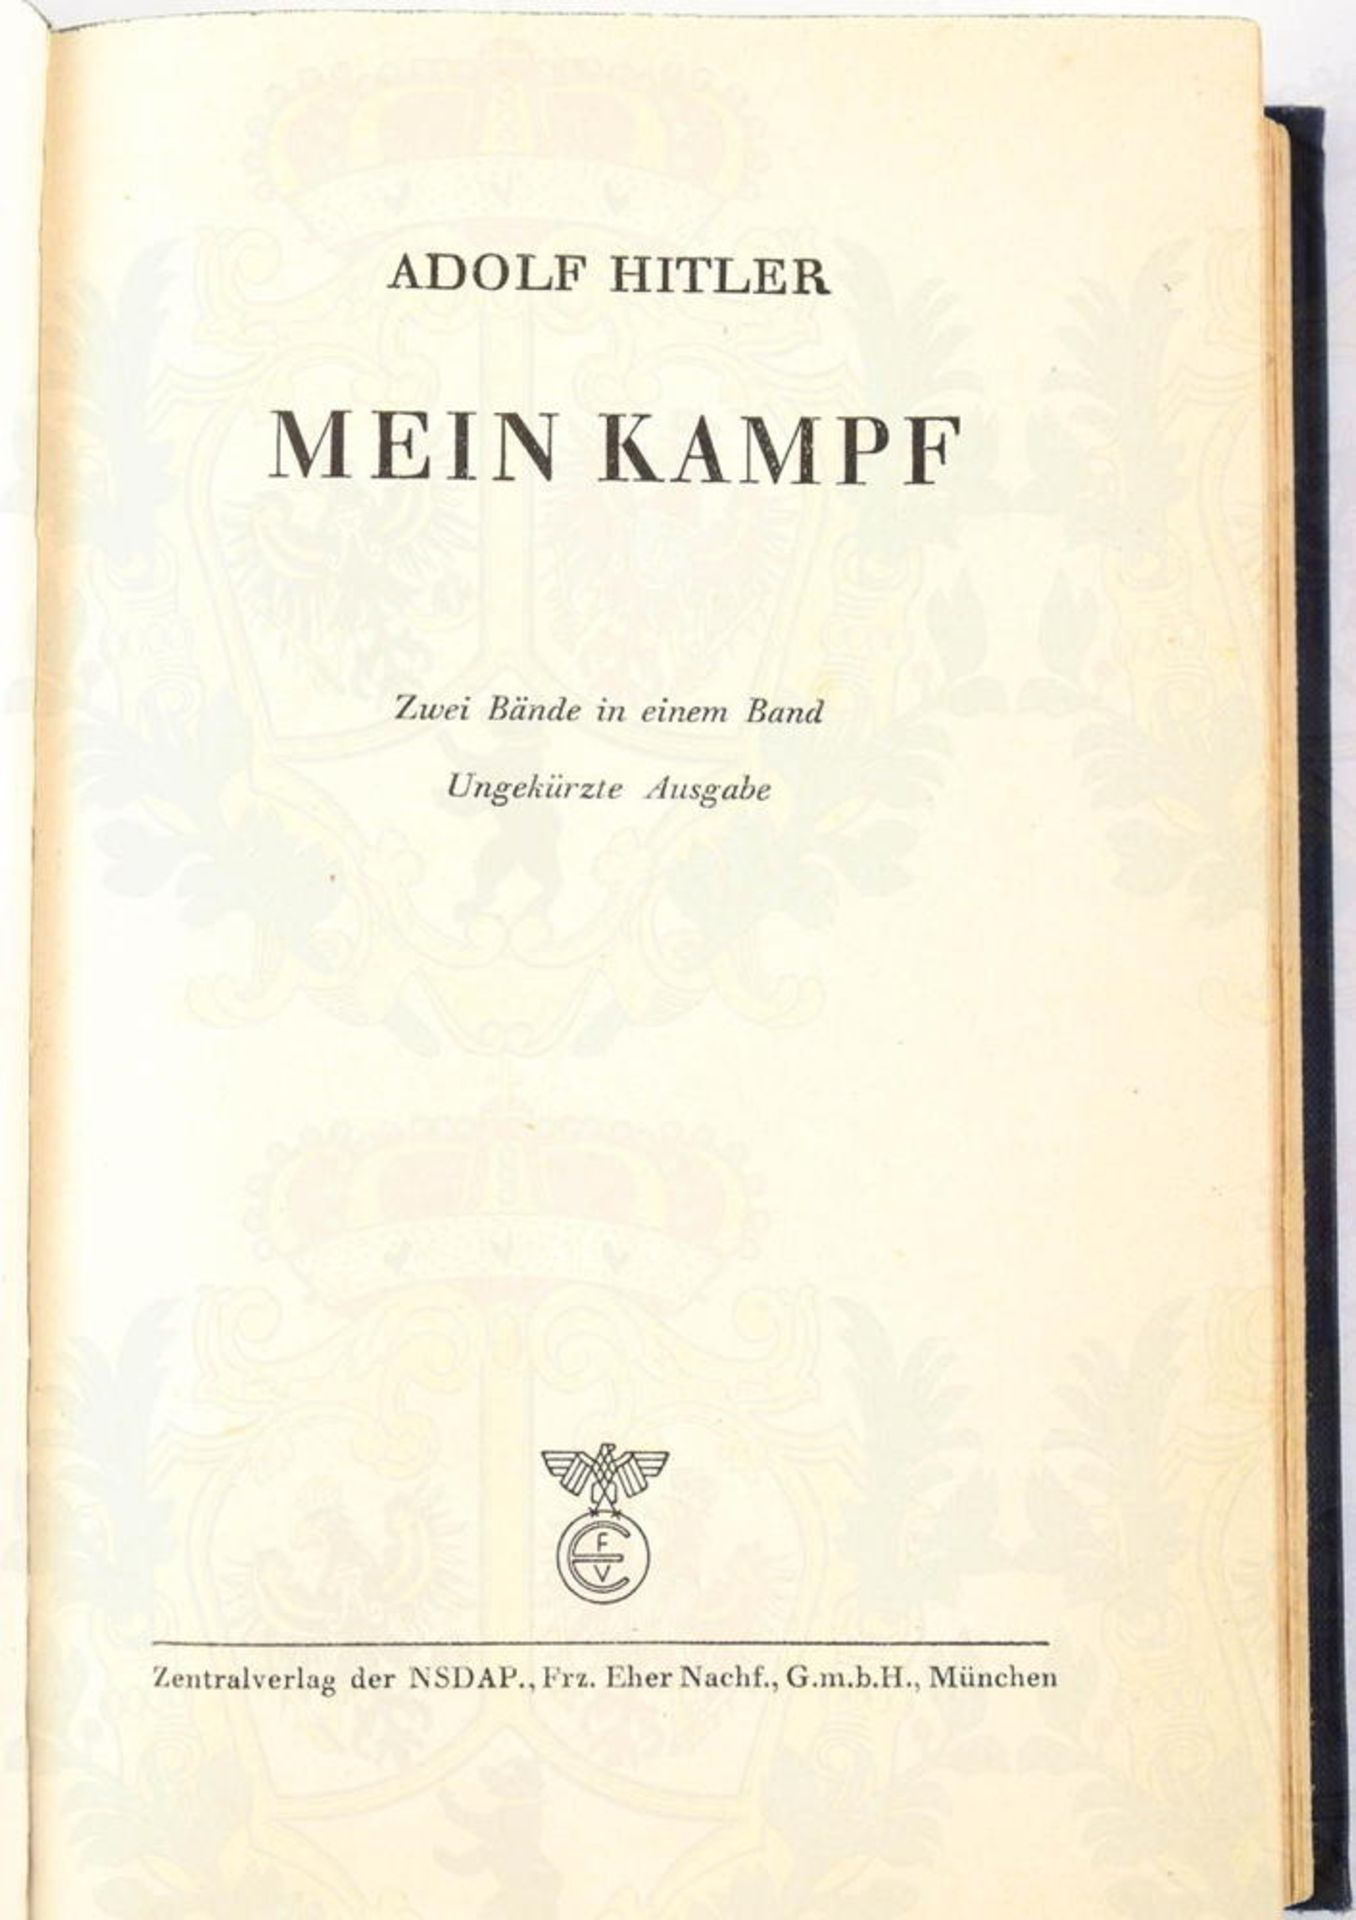 MEIN KAMPF, A. Hitler, Volksausgabe, Zentralverlag der NSDAP Franz Eher Nachf., 758.-762. Auflage, M - Bild 2 aus 3